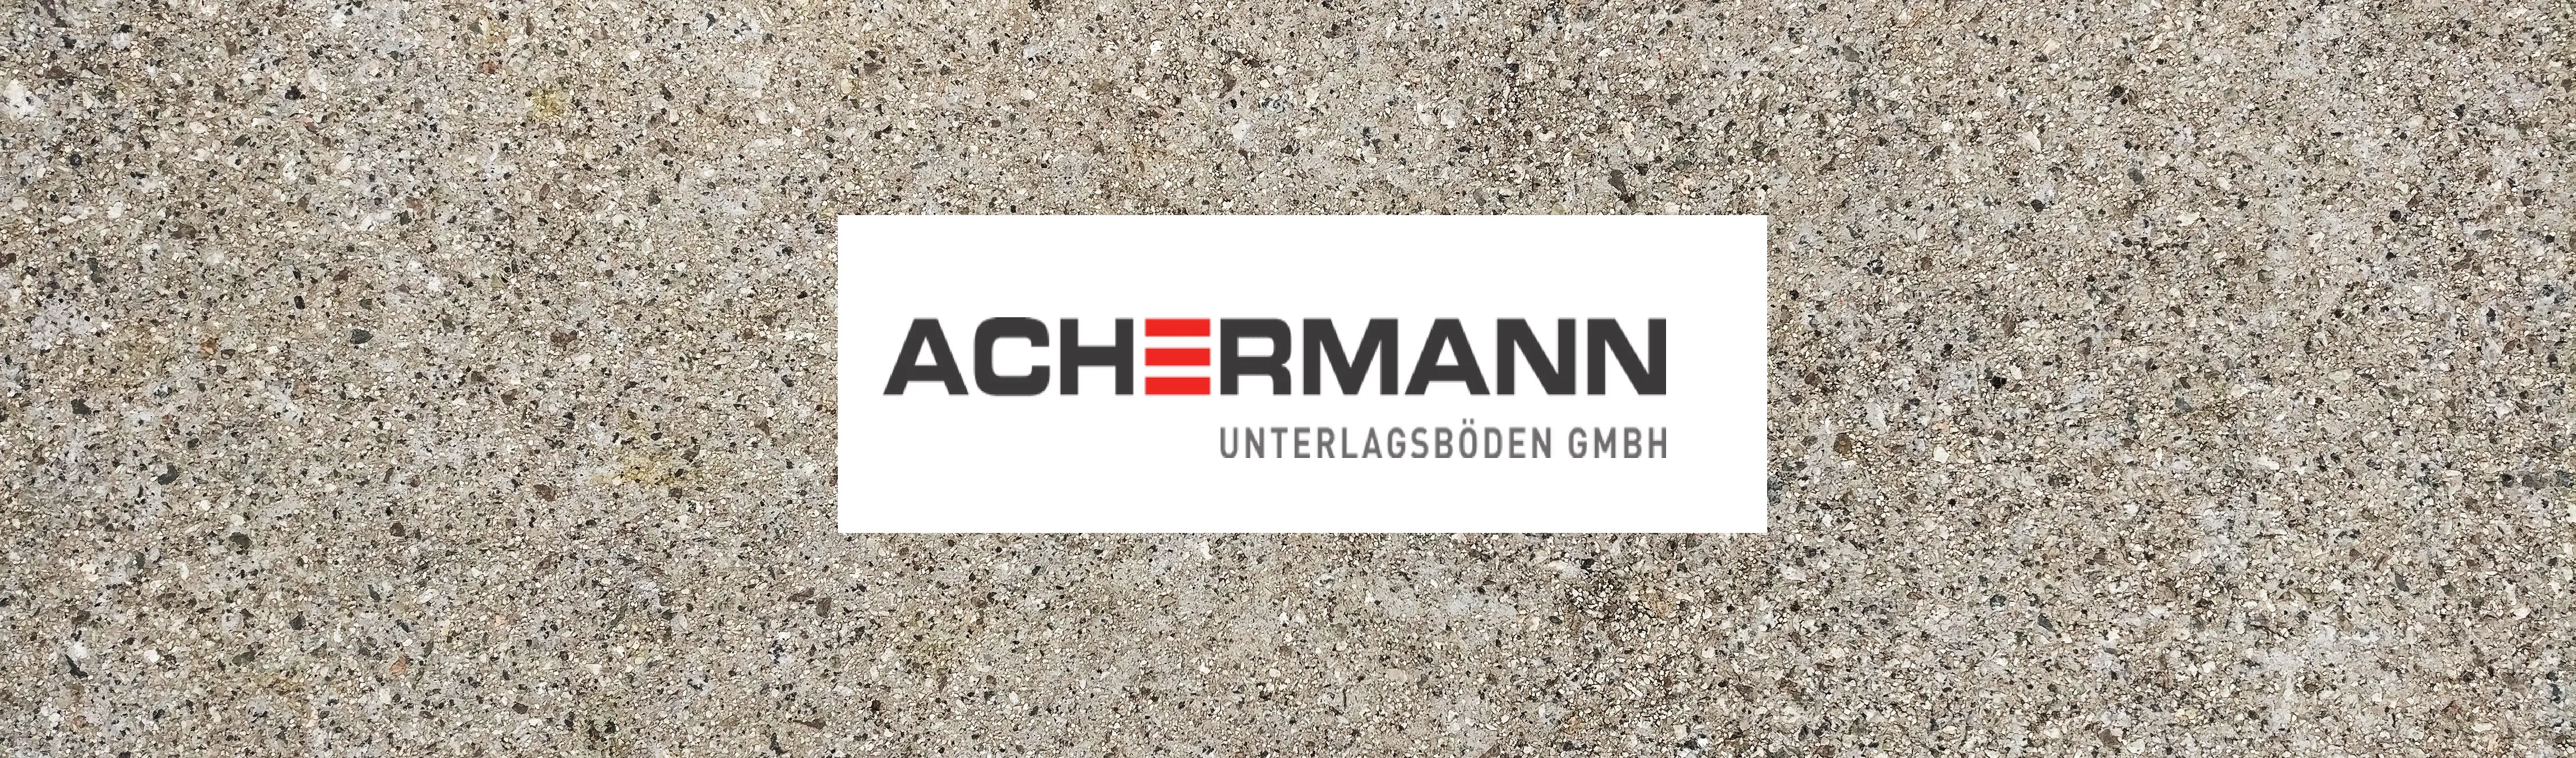 Achermann Unterlagsböden GmbH